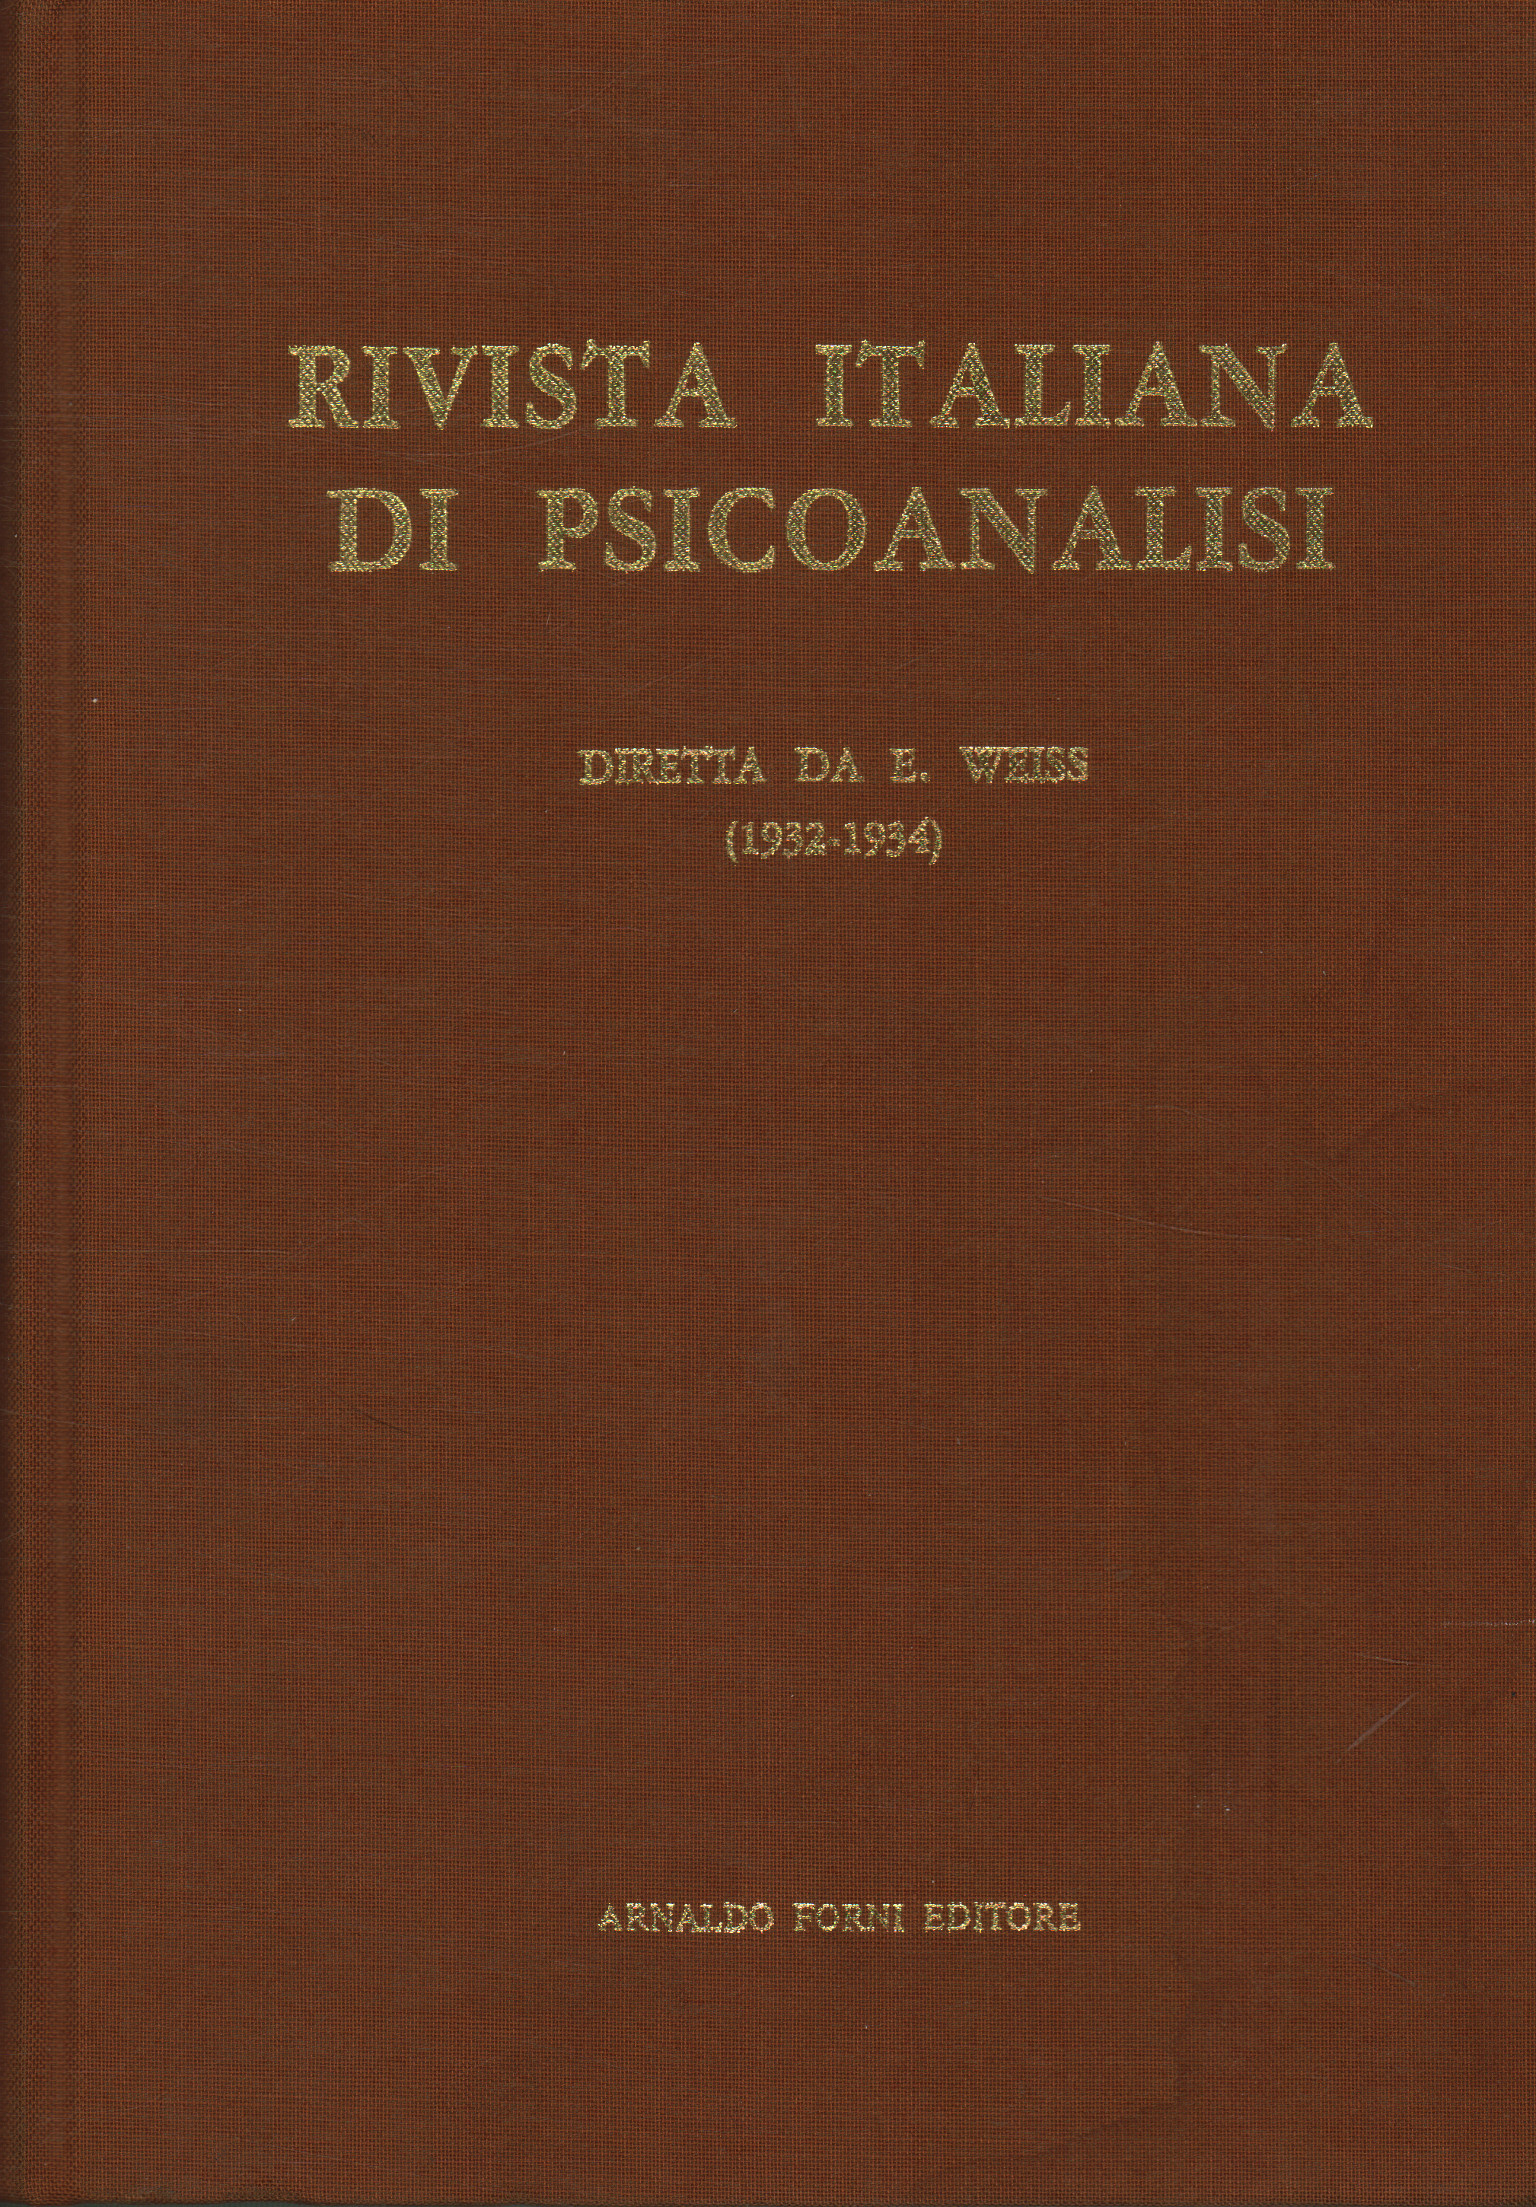 Rivista italiana di psicoanalisi